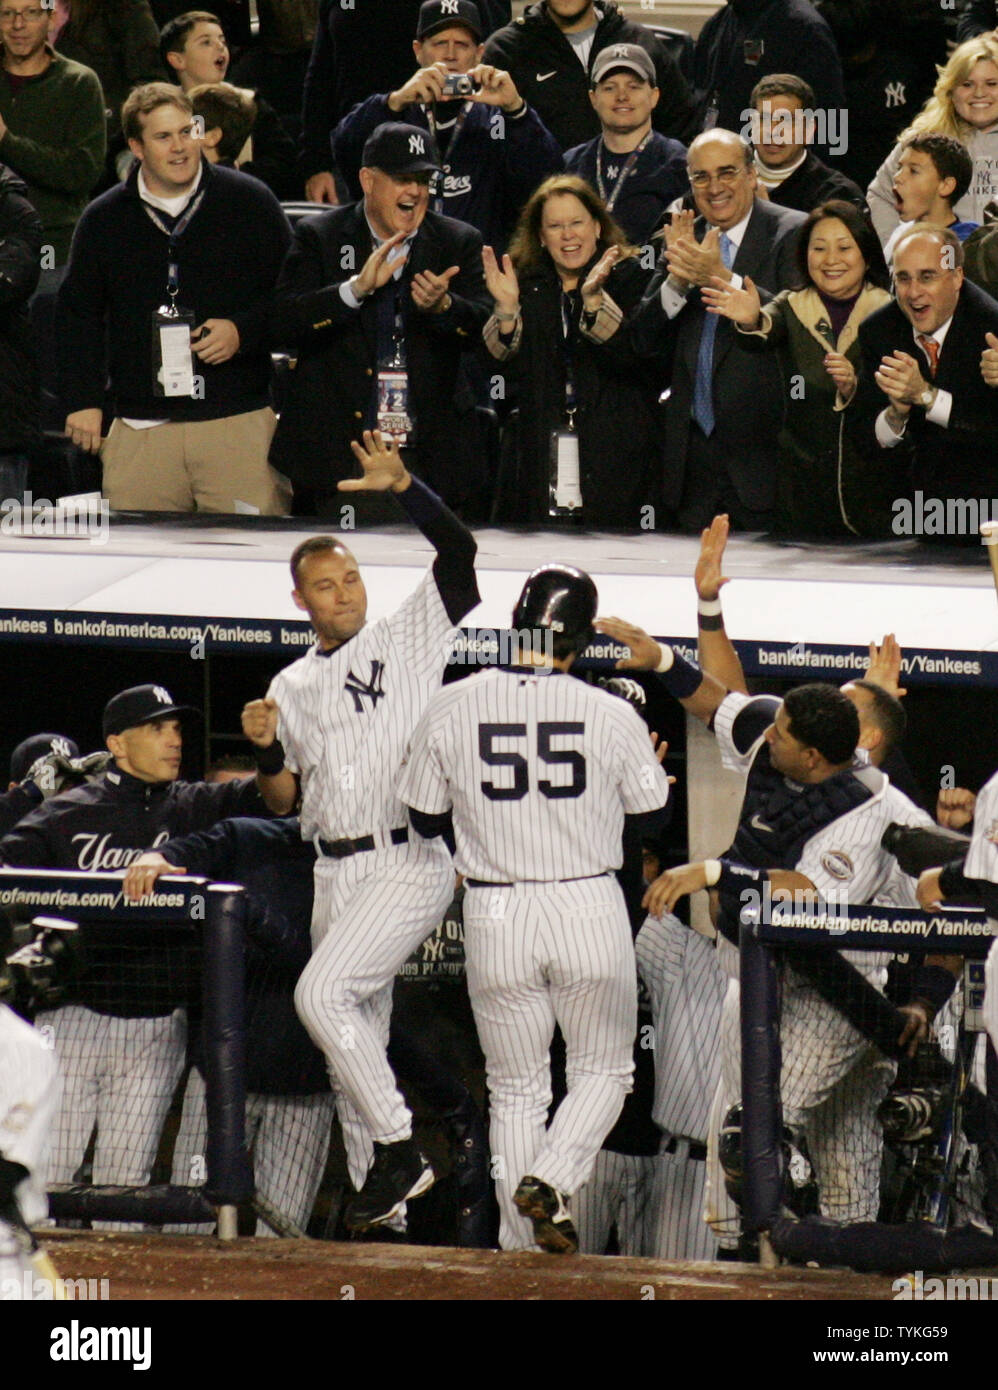 A Look into Yankees past: Hideki Matsui's incredible 2009 WS